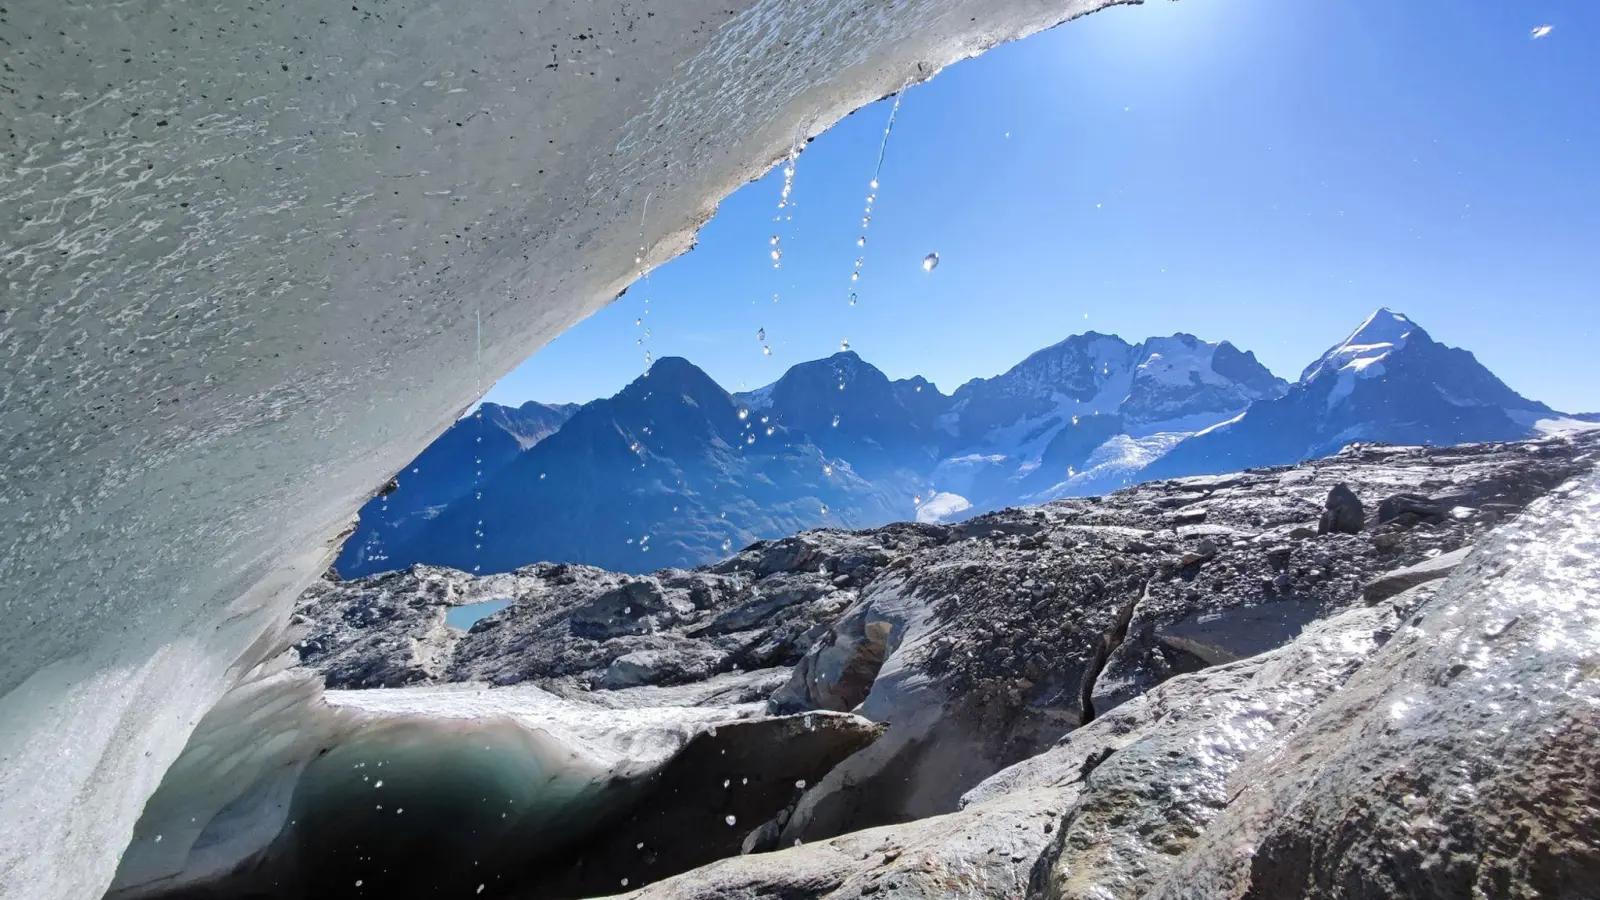 Selbst Mitte September schmilzt das Eis des Vadret dal Murtèl auf einer Höhe von 3100 Meter am Fuße des Piz Bernina rapide. (Foto: M. Huss/SCNAT/dpa)